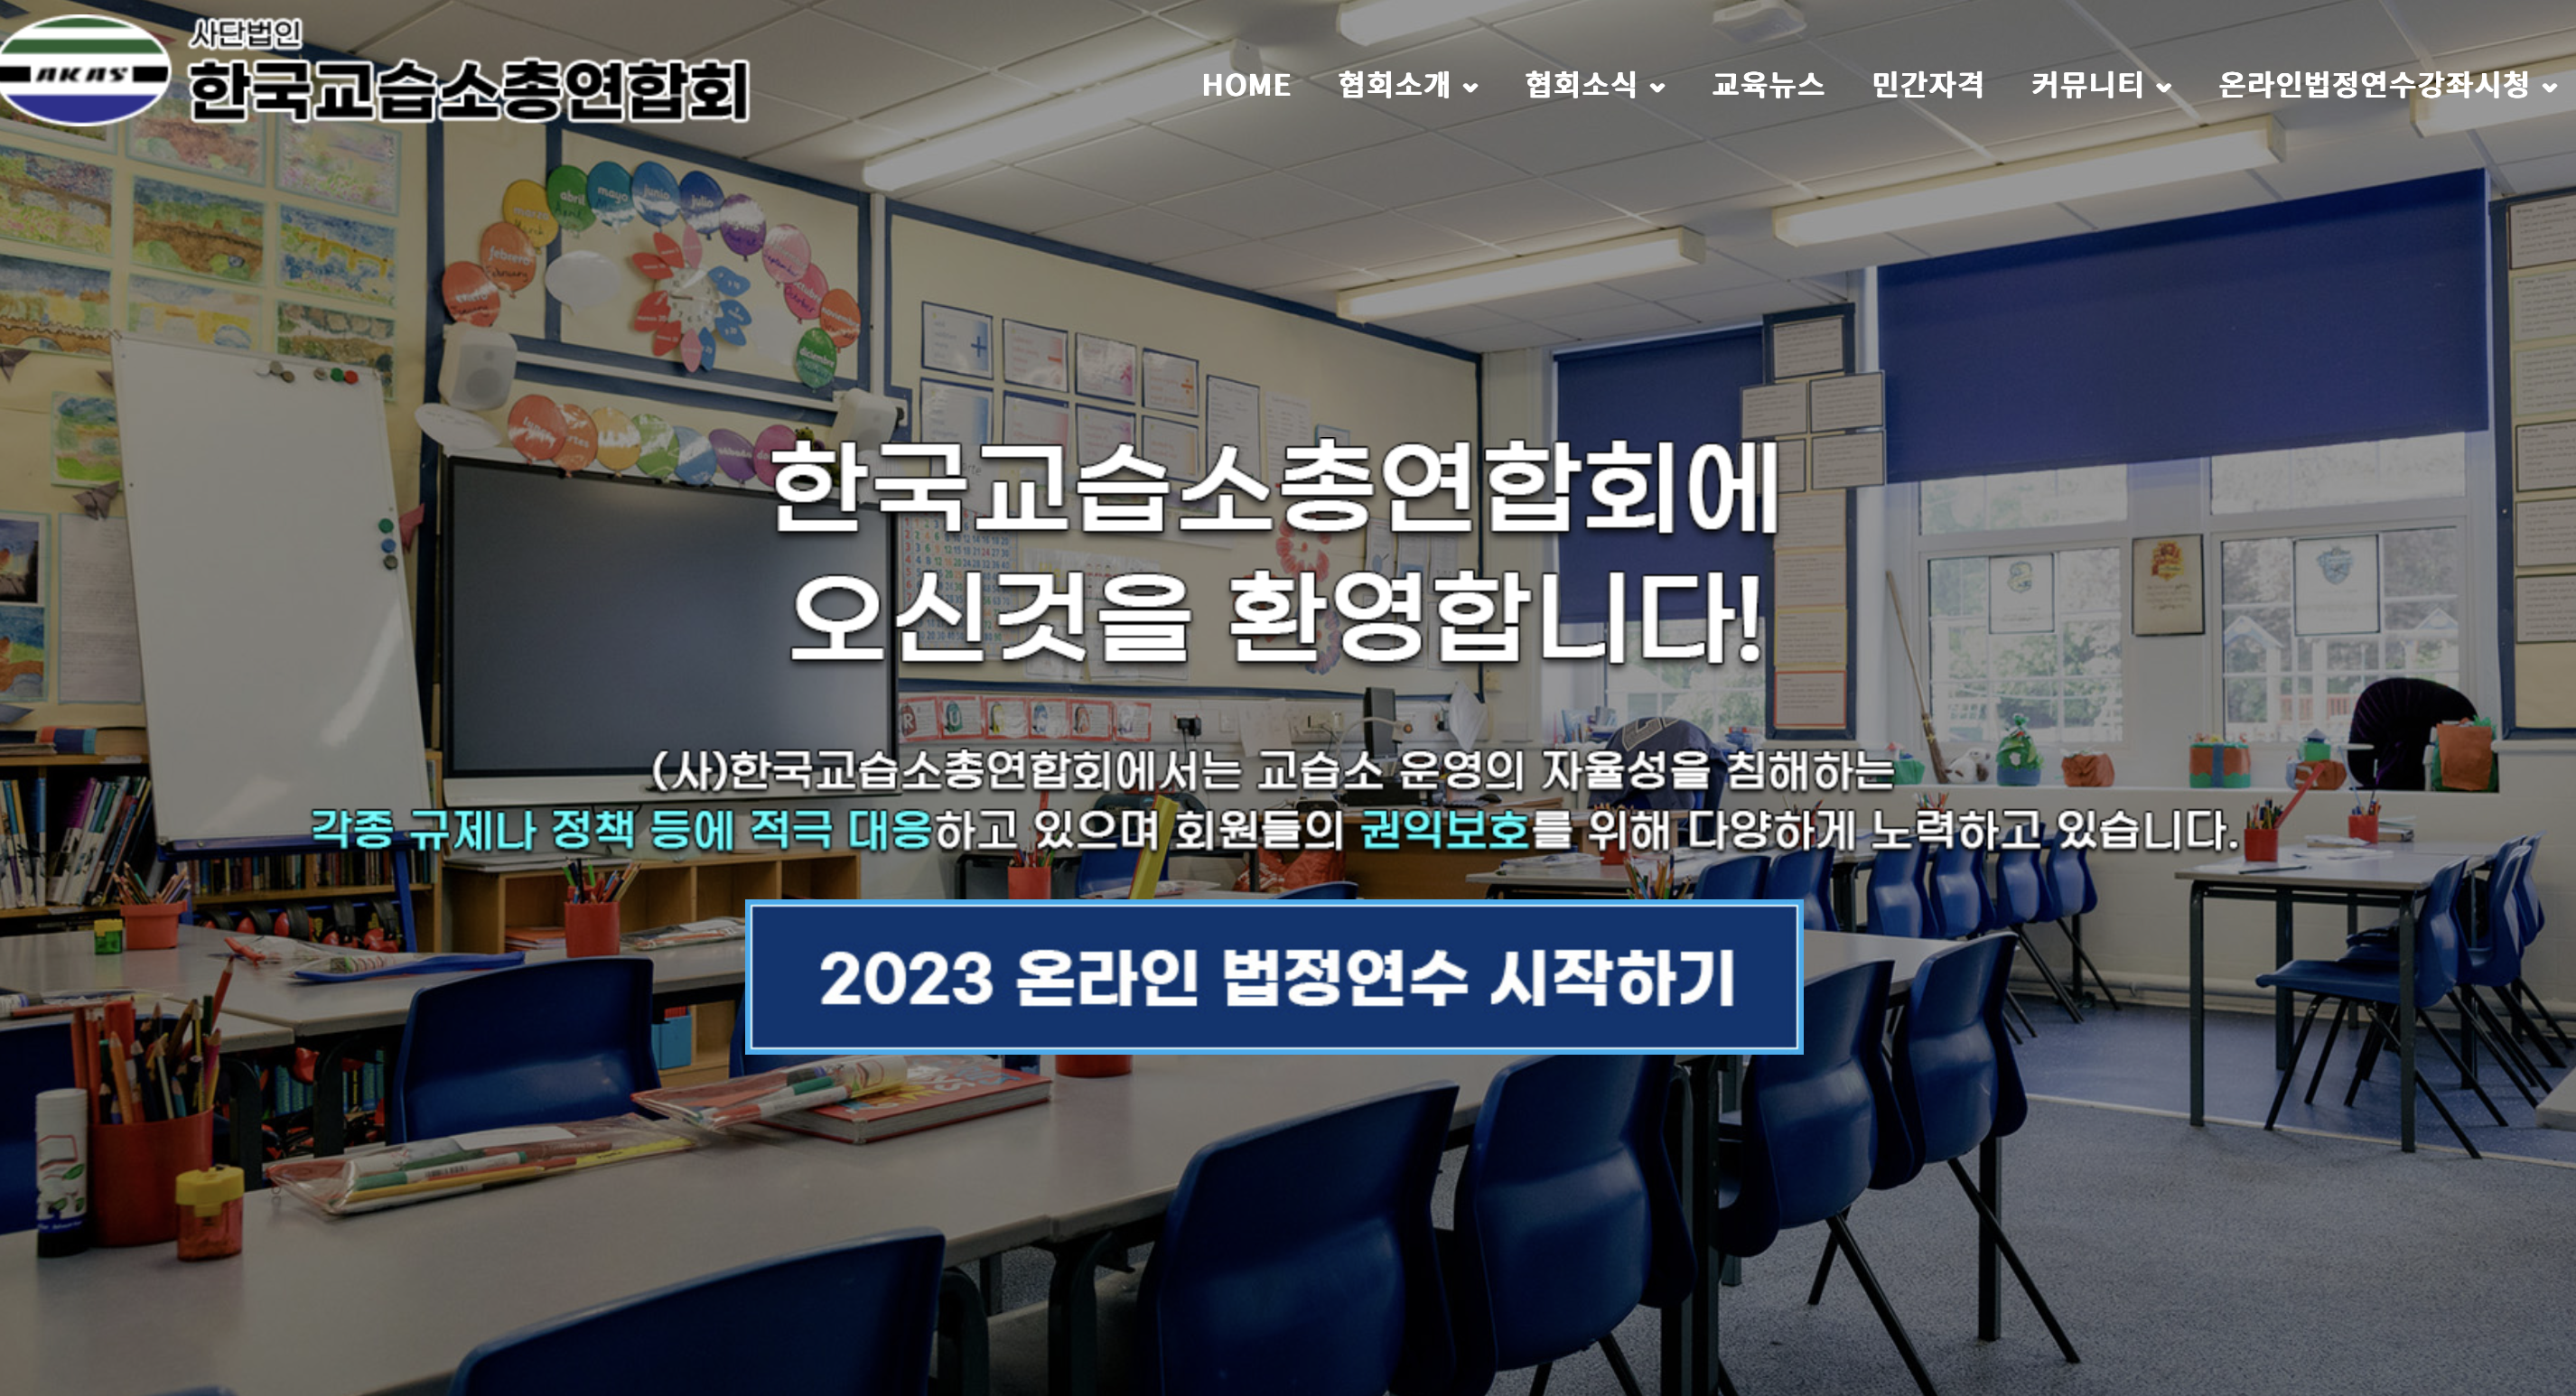 한국교습소총연합회 홈페이지 (www.akas.or.kr)